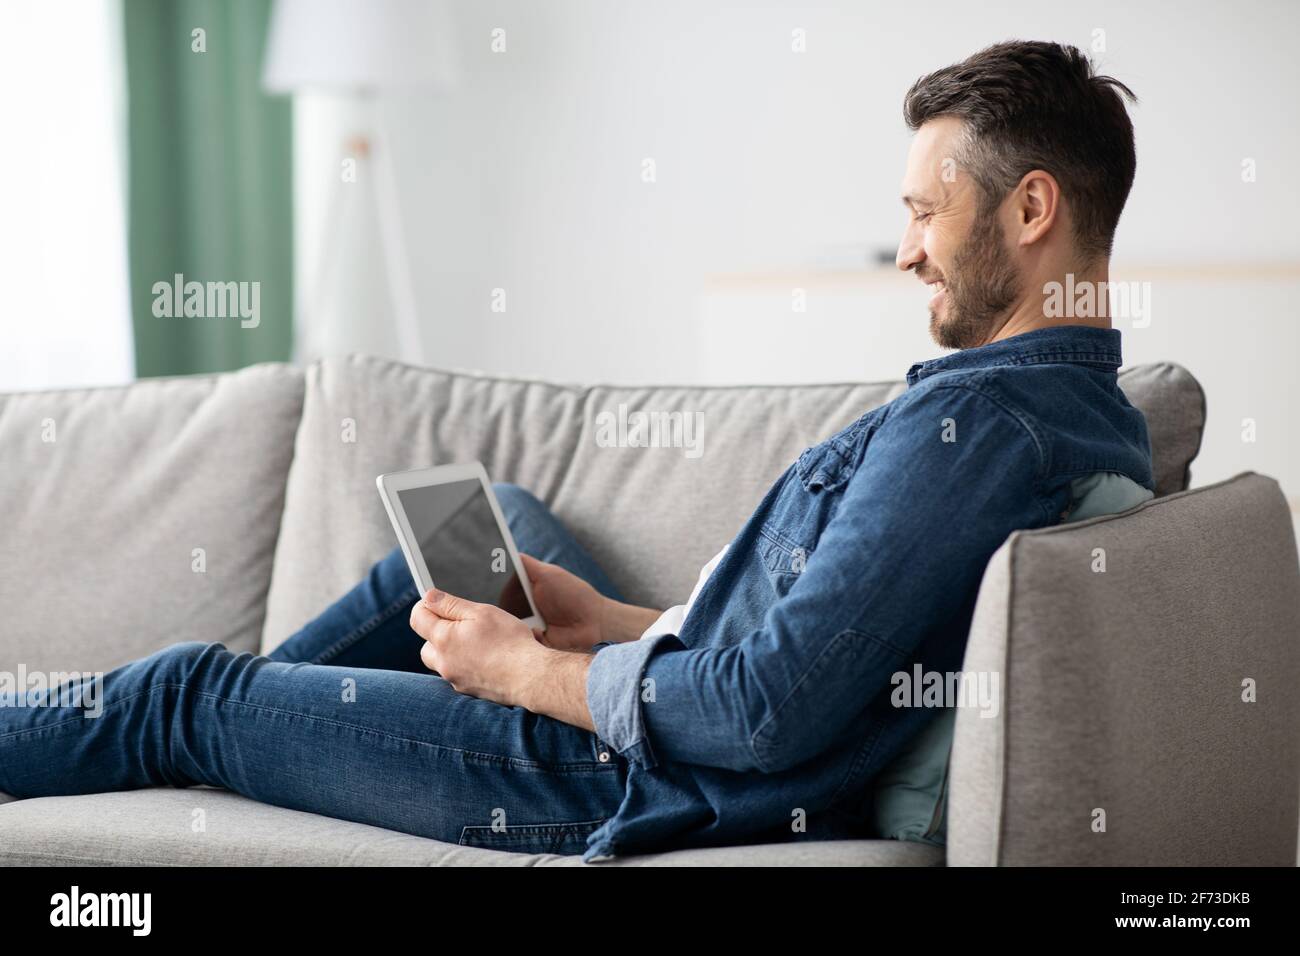 Uomo sorridente con la bearded che usa un tablet digitale con schermo vuoto Foto Stock